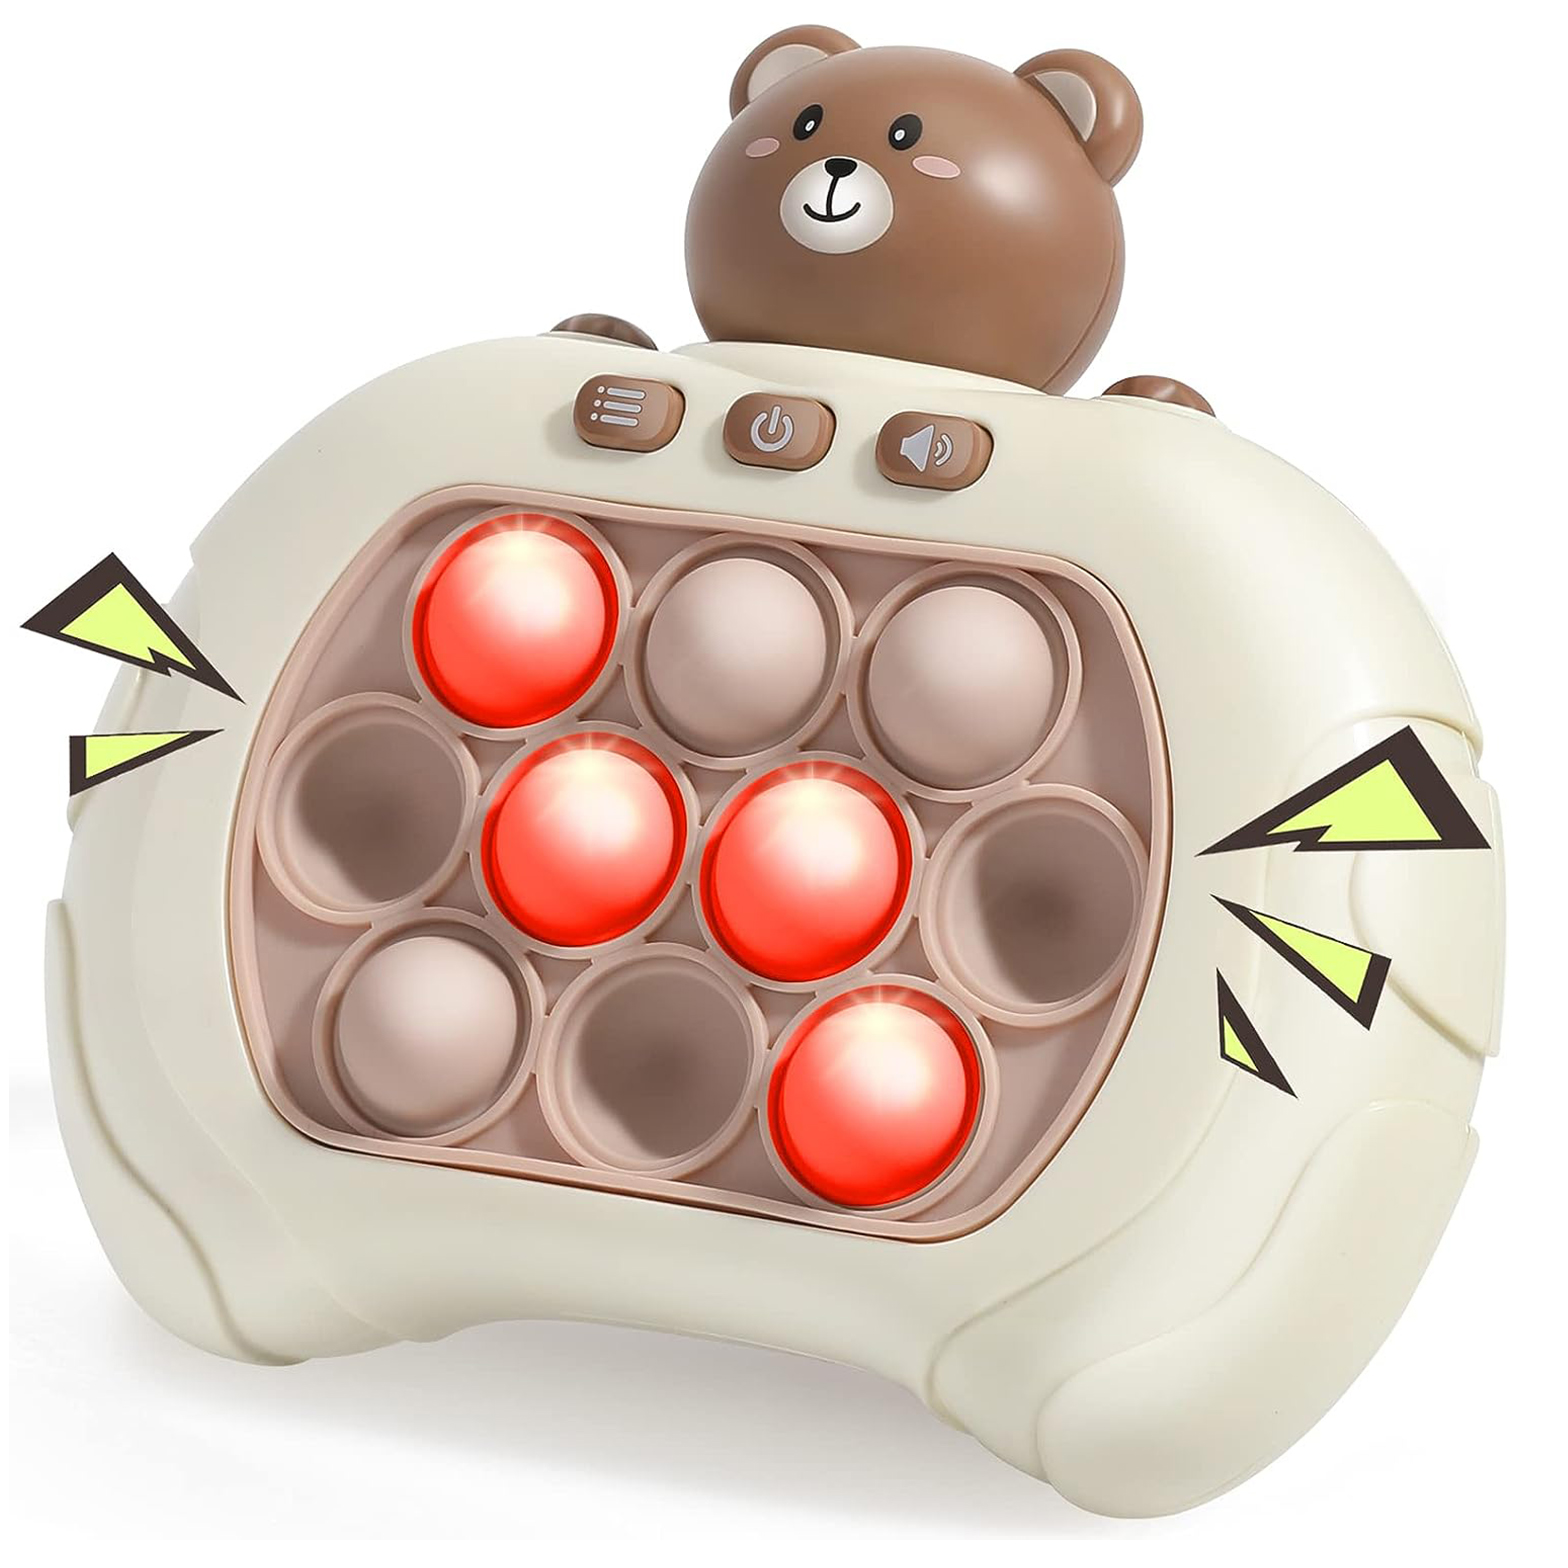 PopUp Light™  jouet Anti-Stress pour enfant – Jeux O'Tek